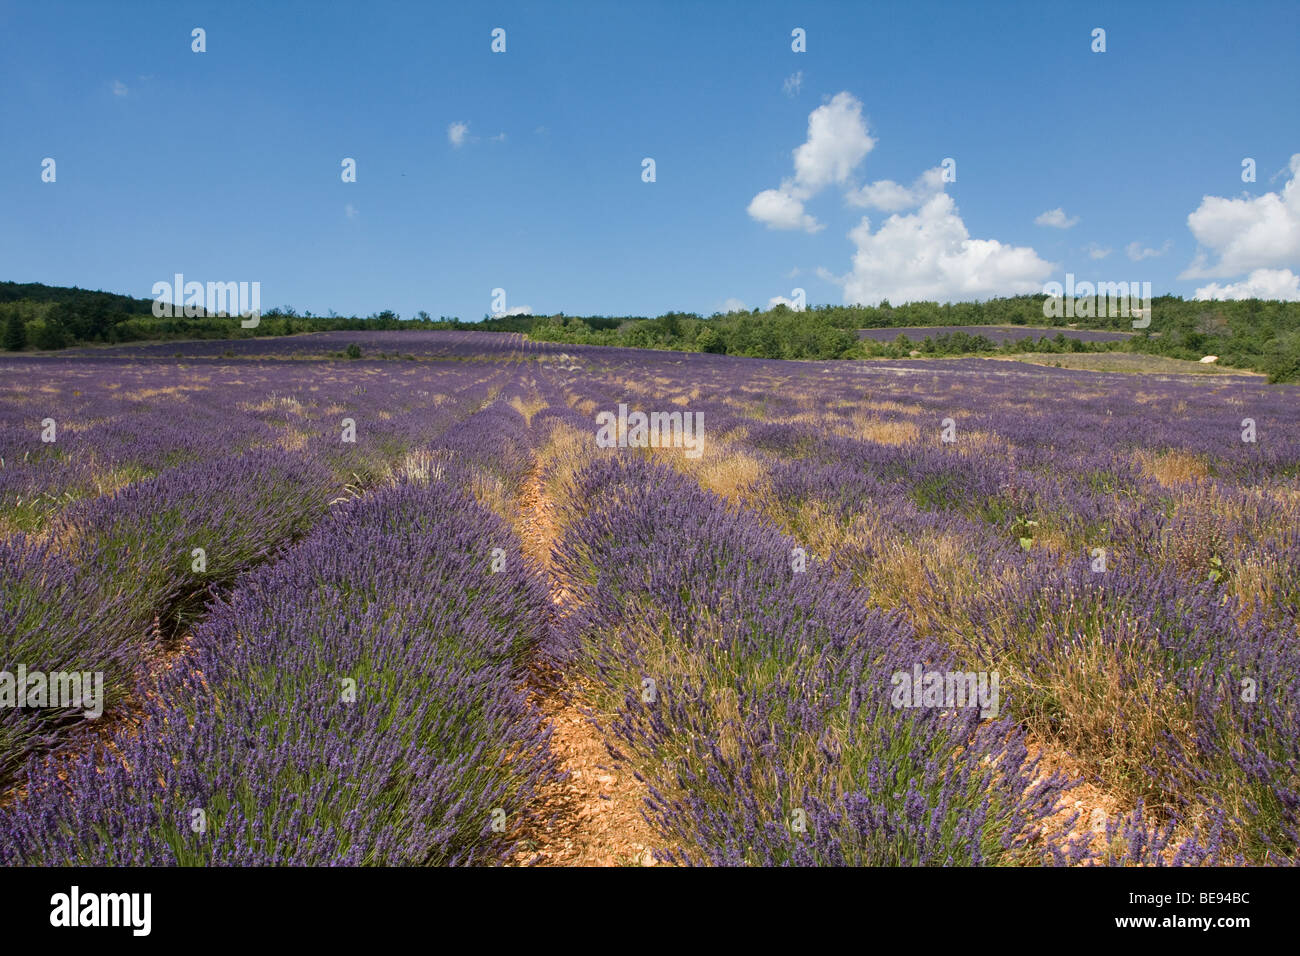 Lavendelvelden; Lavender fields Stock Photo